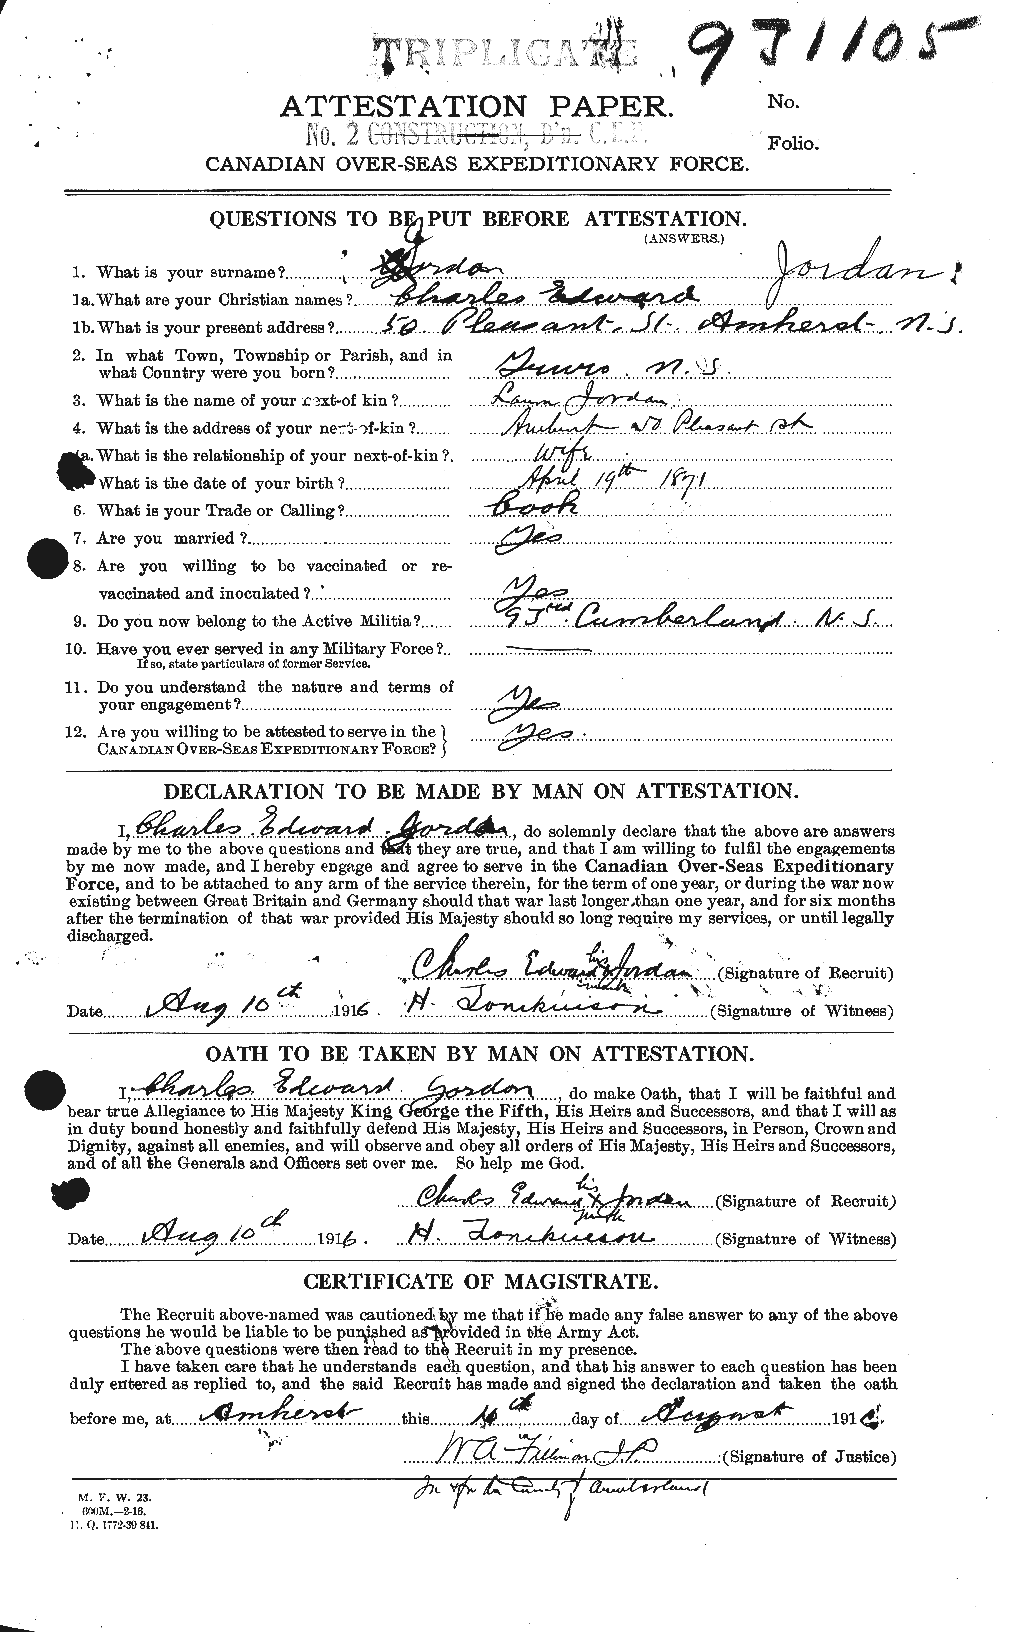 Dossiers du Personnel de la Première Guerre mondiale - CEC 424265a